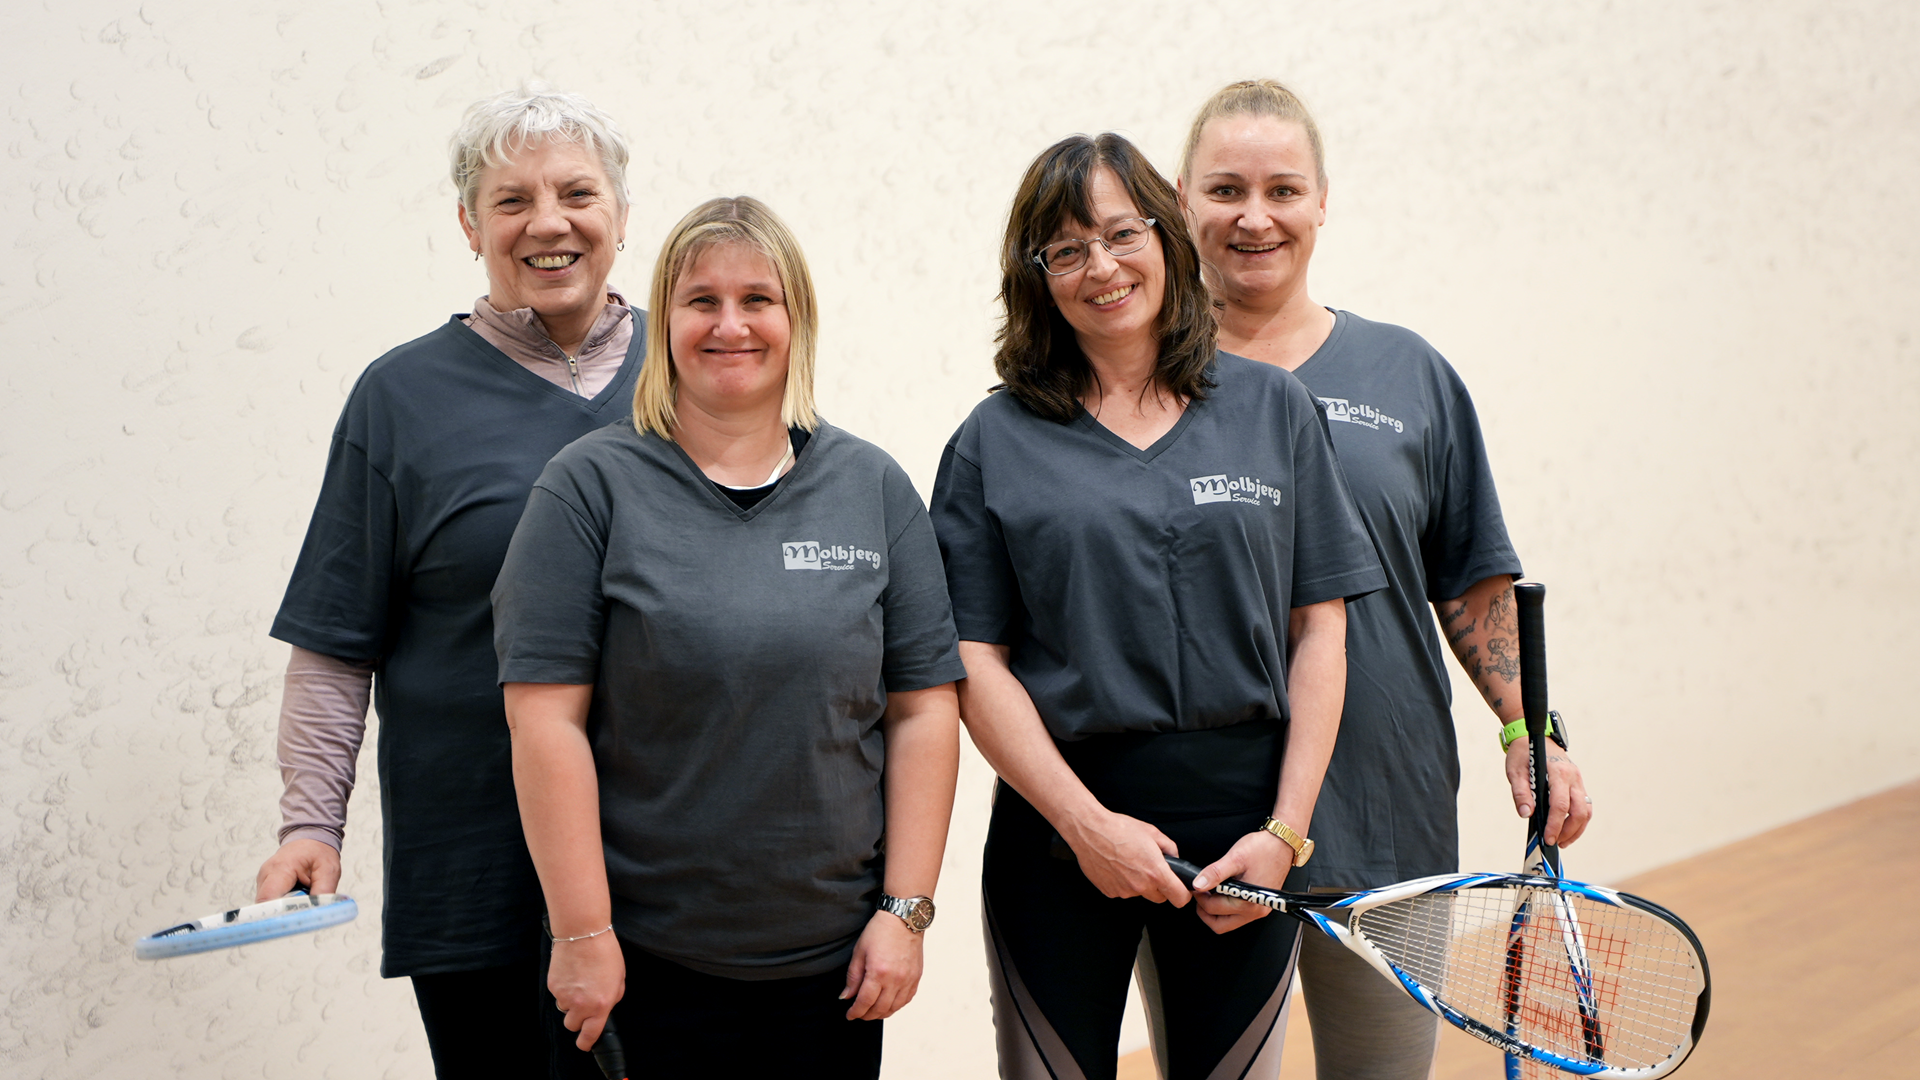 - Det vigtigste er, at vi får svedt og grint, siger 62-årige Birthe om den ugentlige squash-træning med kollegaerne. Foto: Caroline Bundgaard.